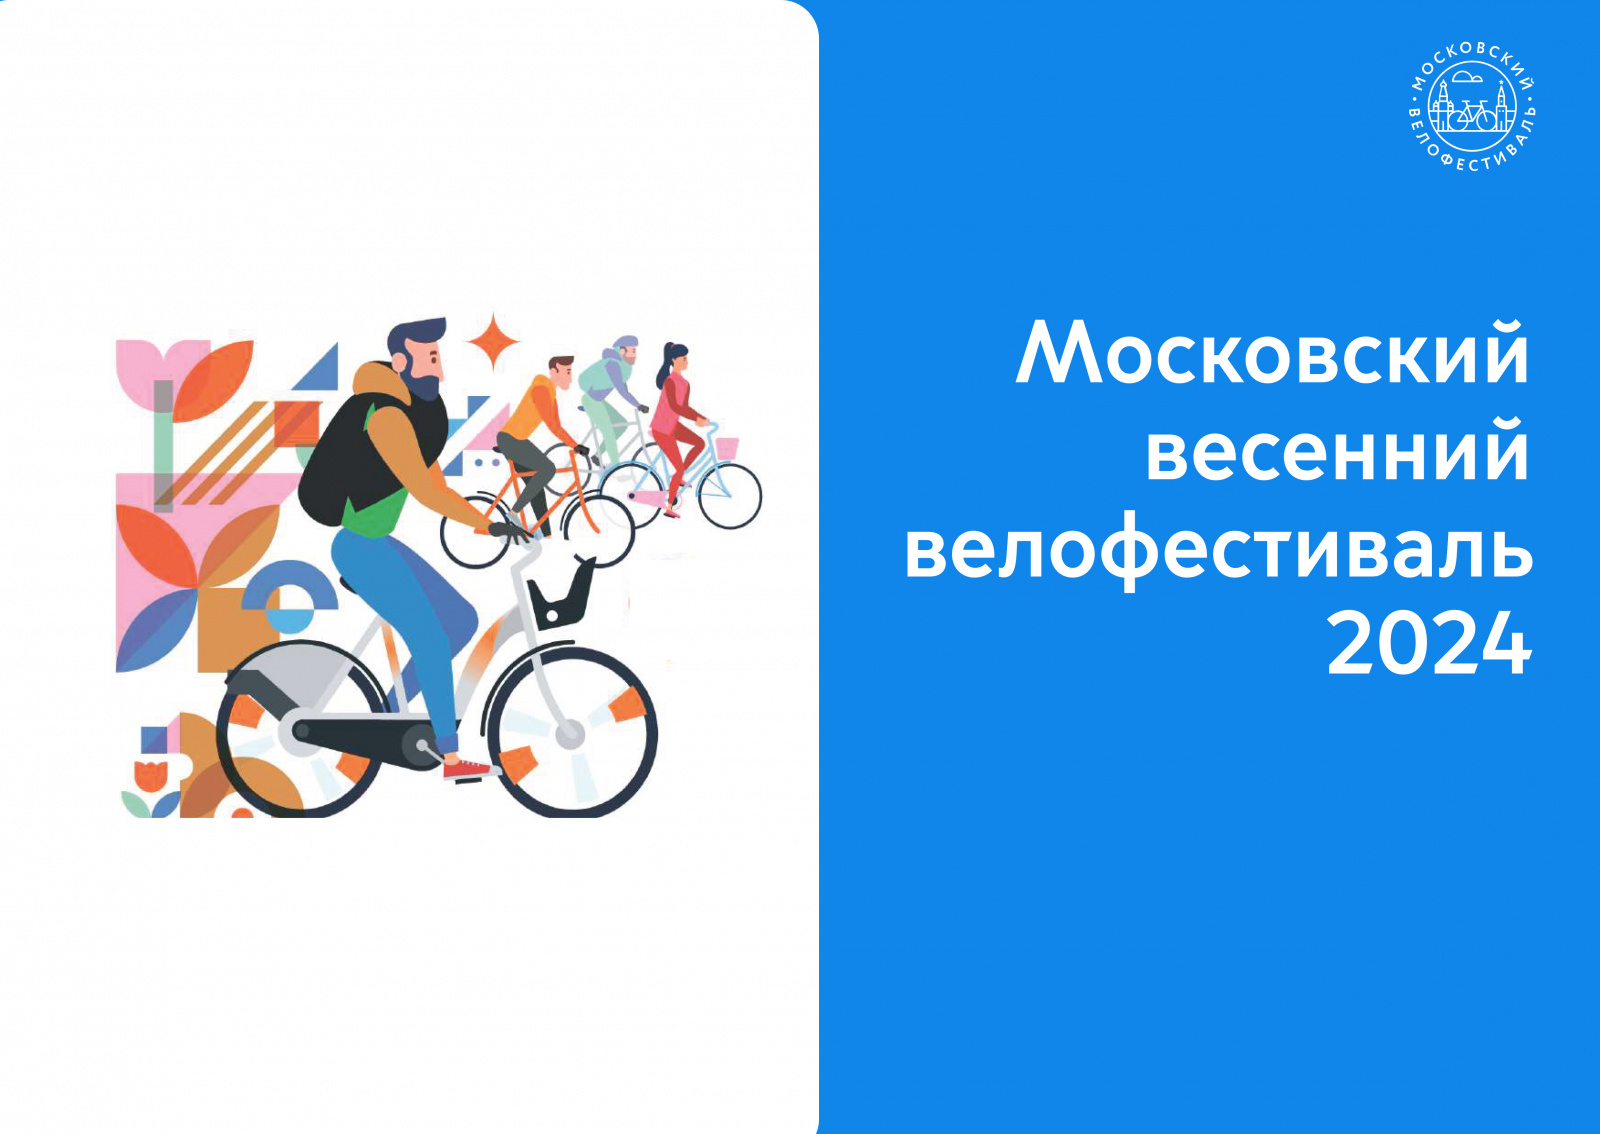 Московский весенний велофестифаль